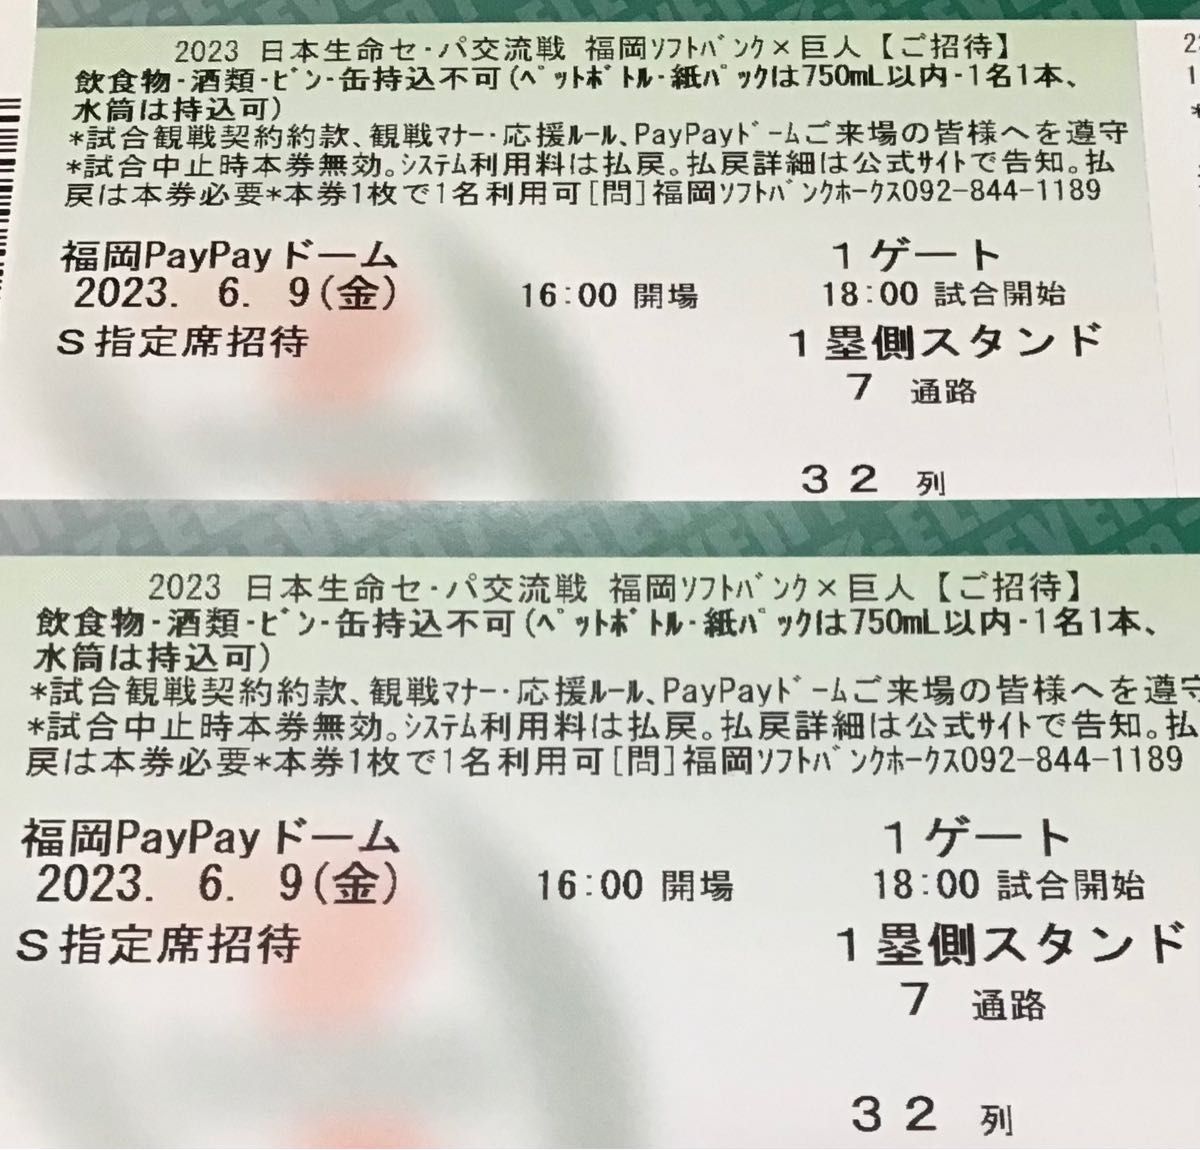 通路側】6/9 福岡ソフトバンクホークス対巨人 S指定席 チケット2枚 6月